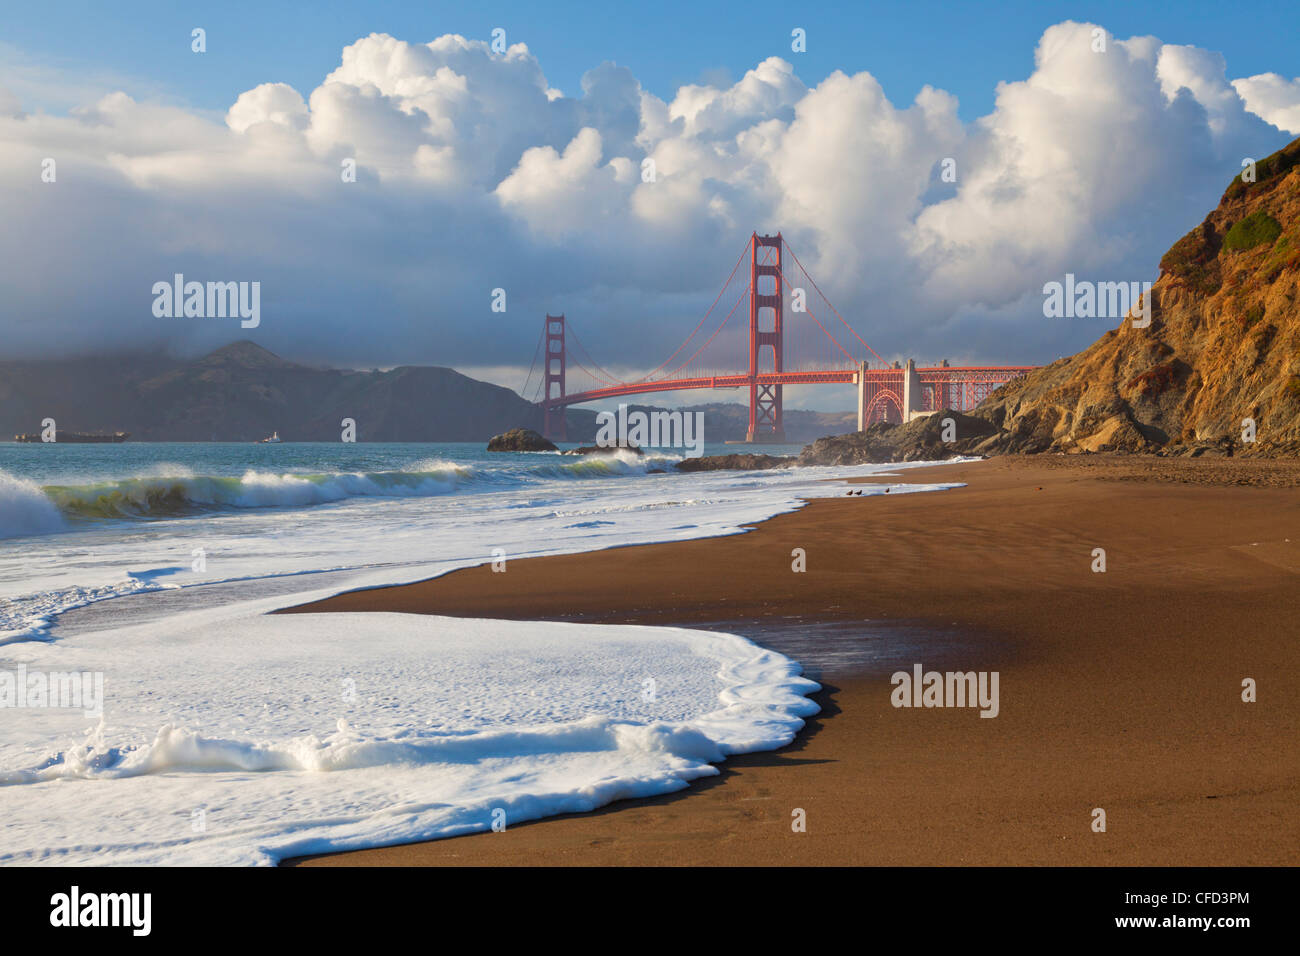 Le Golden Gate Bridge, qui relie la ville de San Francisco avec le comté de Marin, San Francisco, California, USA Banque D'Images